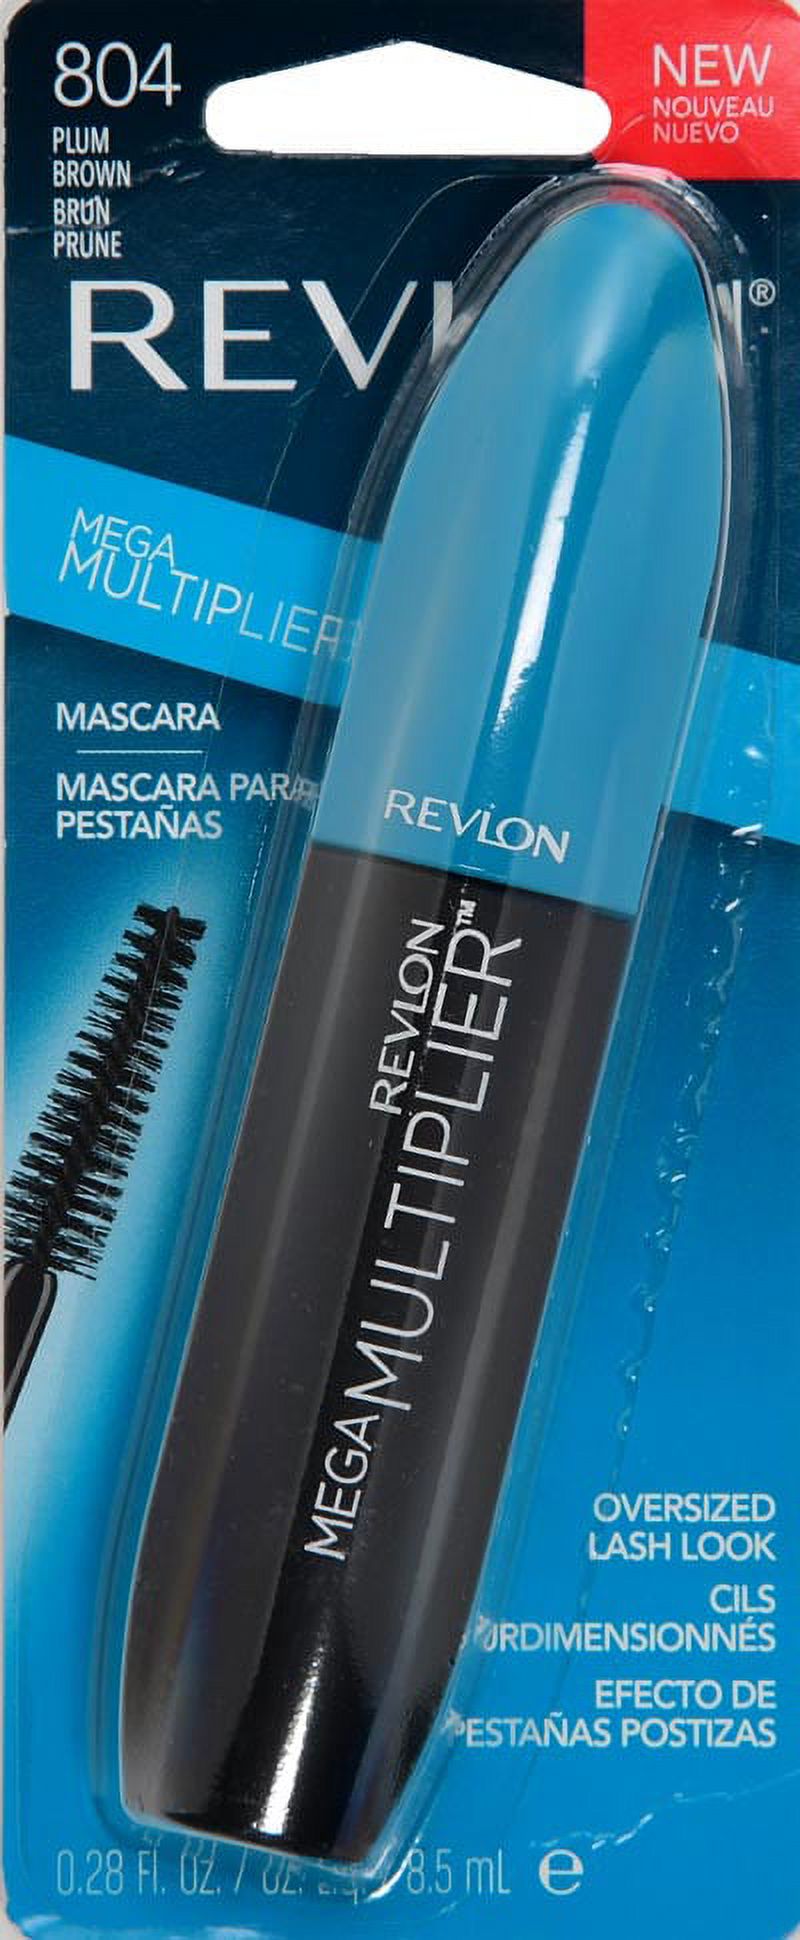 Revlon Mega Multiplier Mascara, Smudgeproof Eye Makeup, 804 Plum Brown, 0.28 fl oz - image 3 of 3